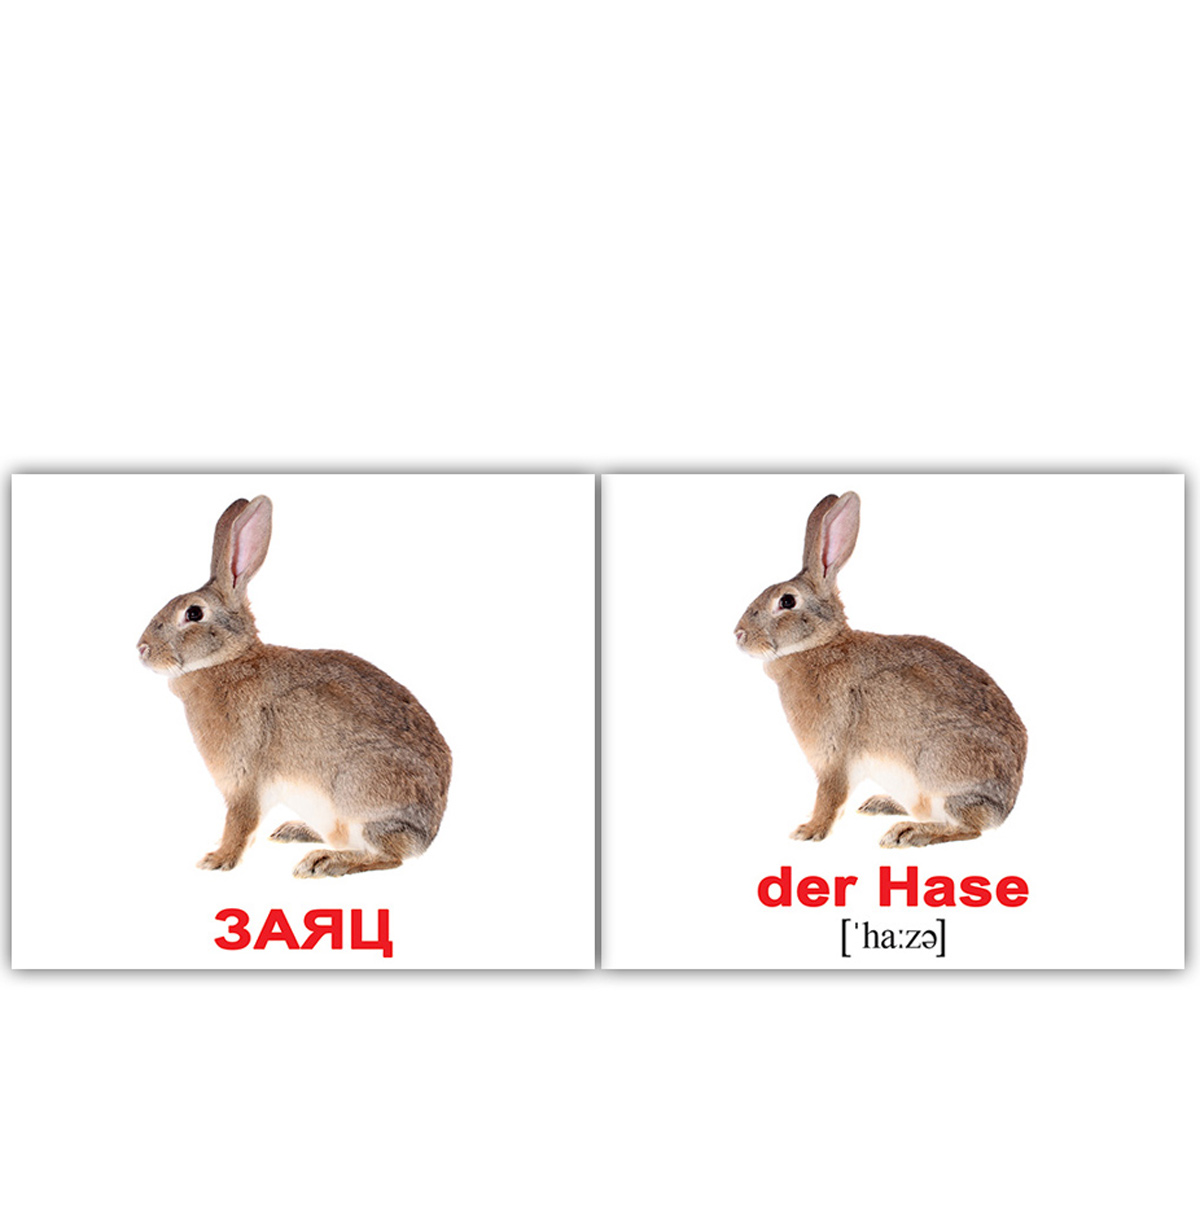 Картки міні російсько-німецькі 'Дикі тварини / Wildtiere'